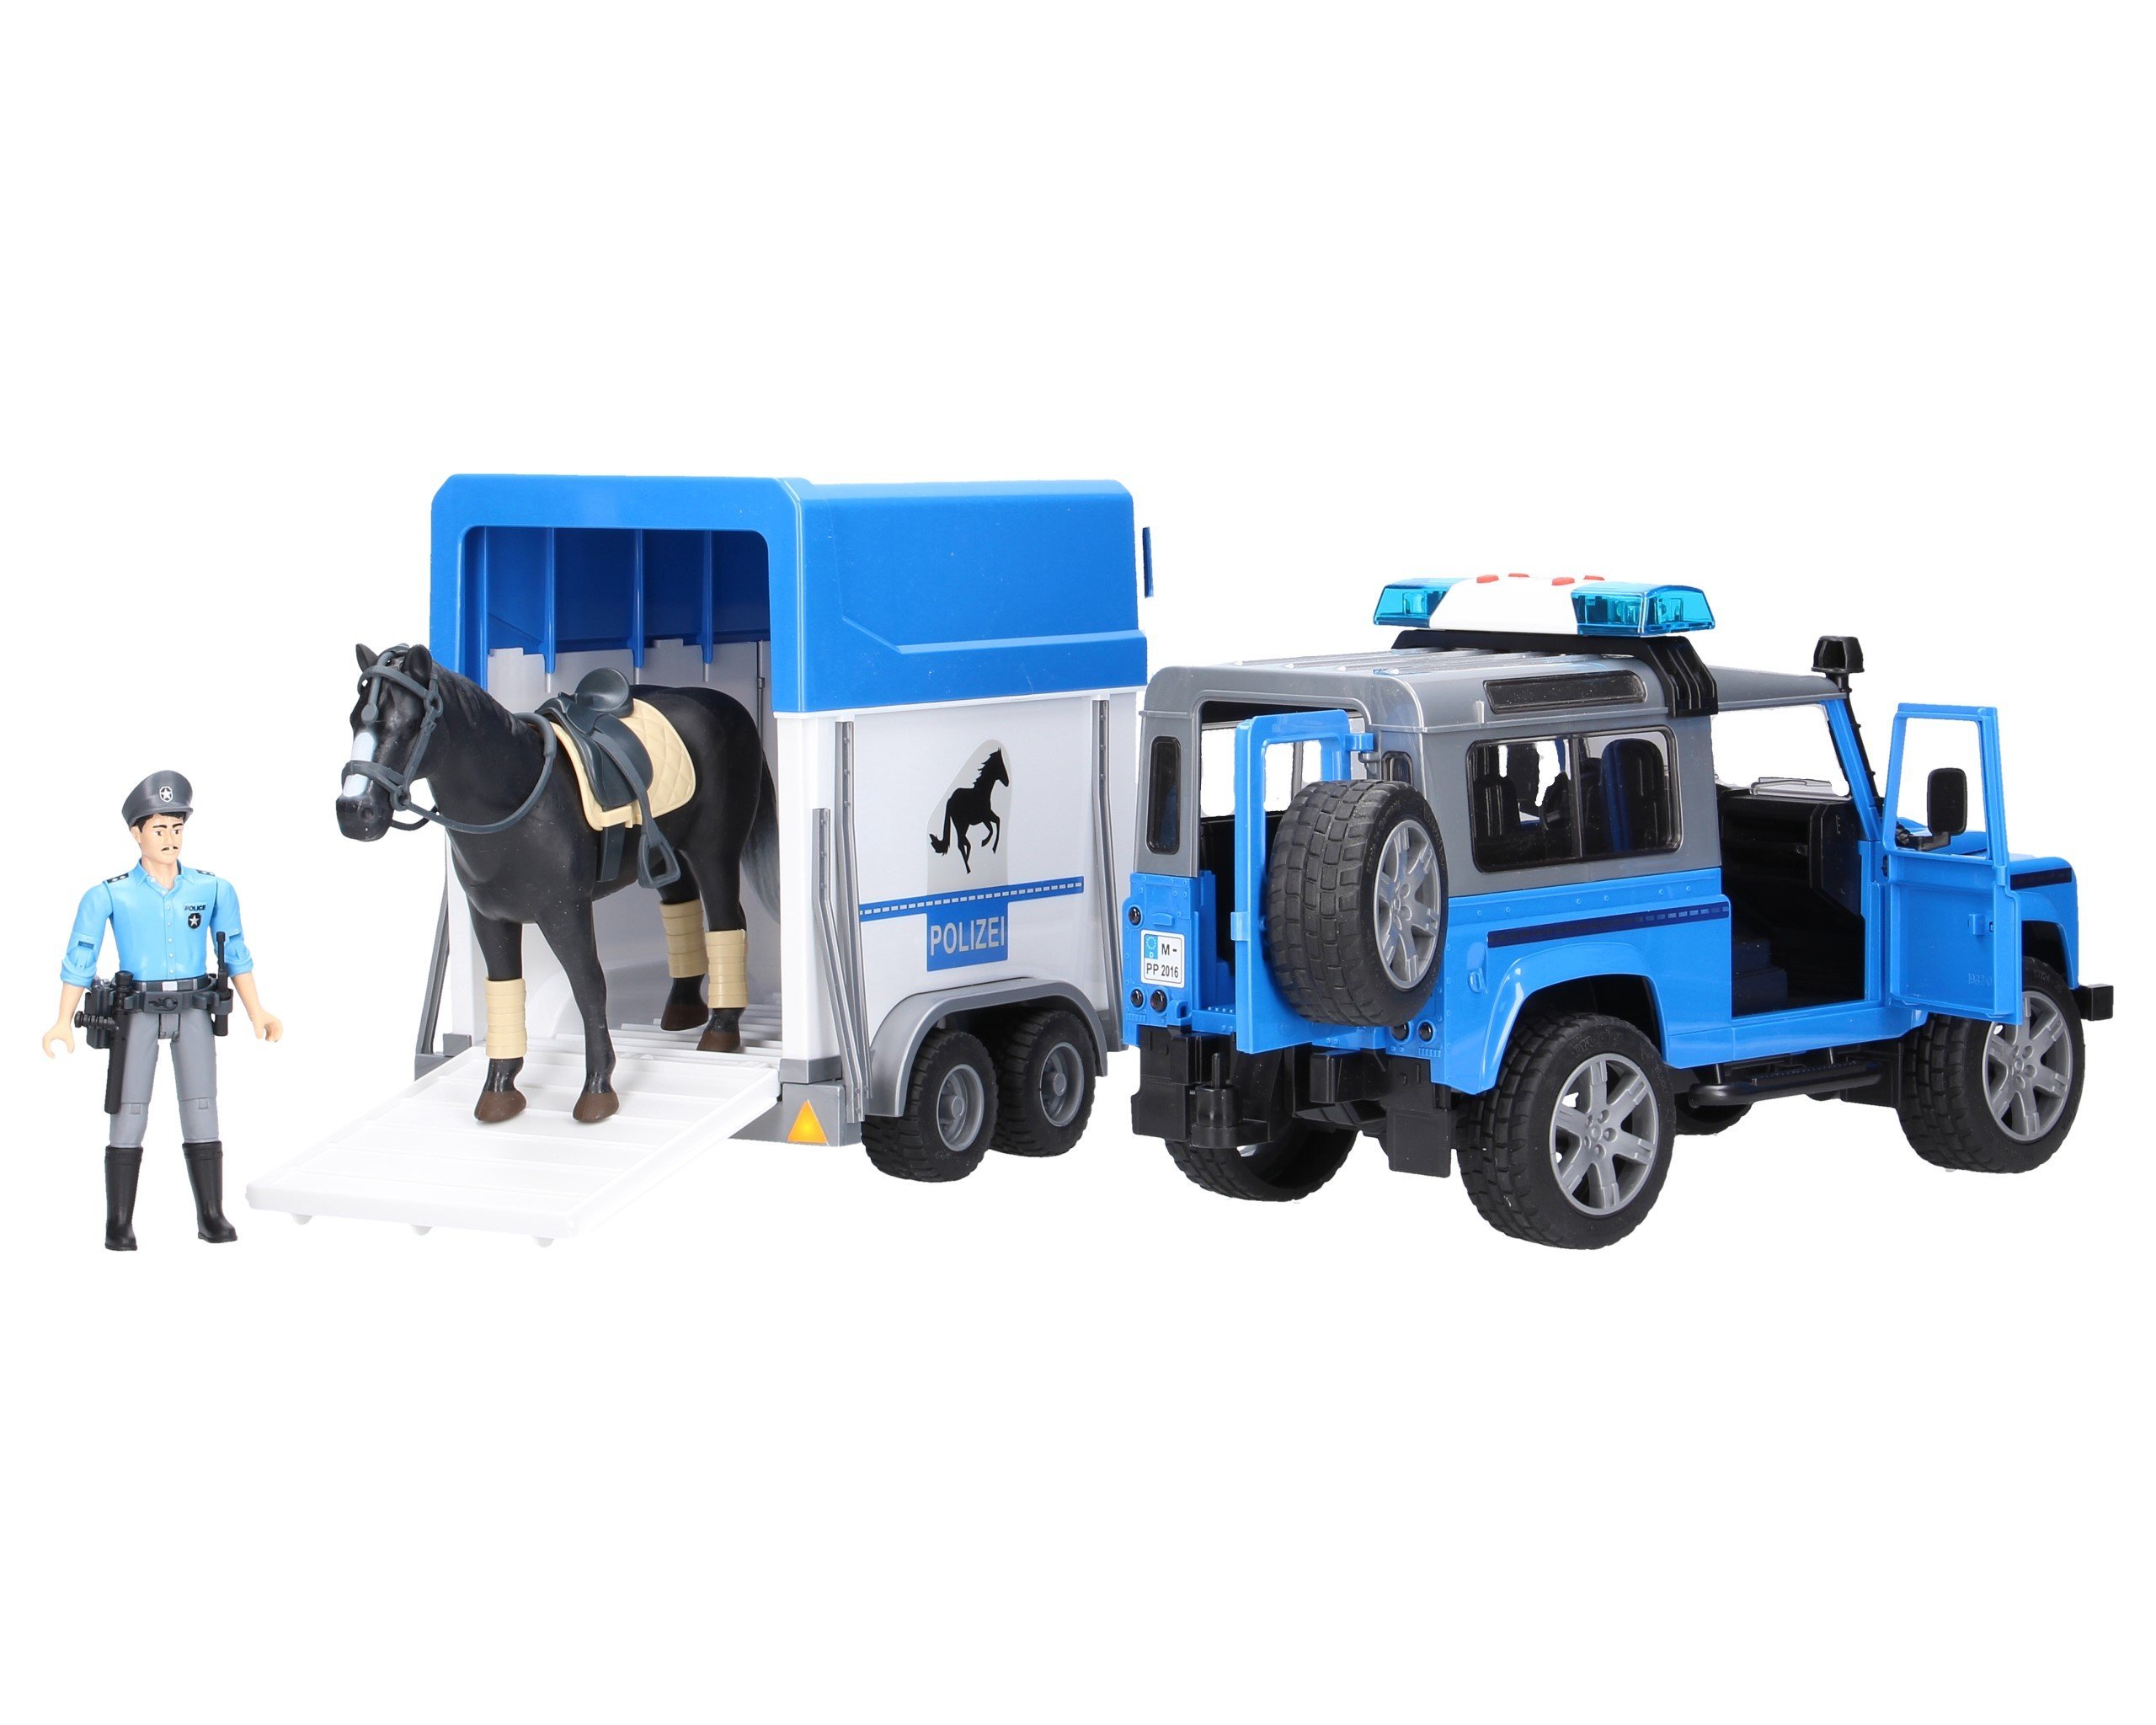 Bruder 02588 Land Rover policyjny z figurką konia i policjanta